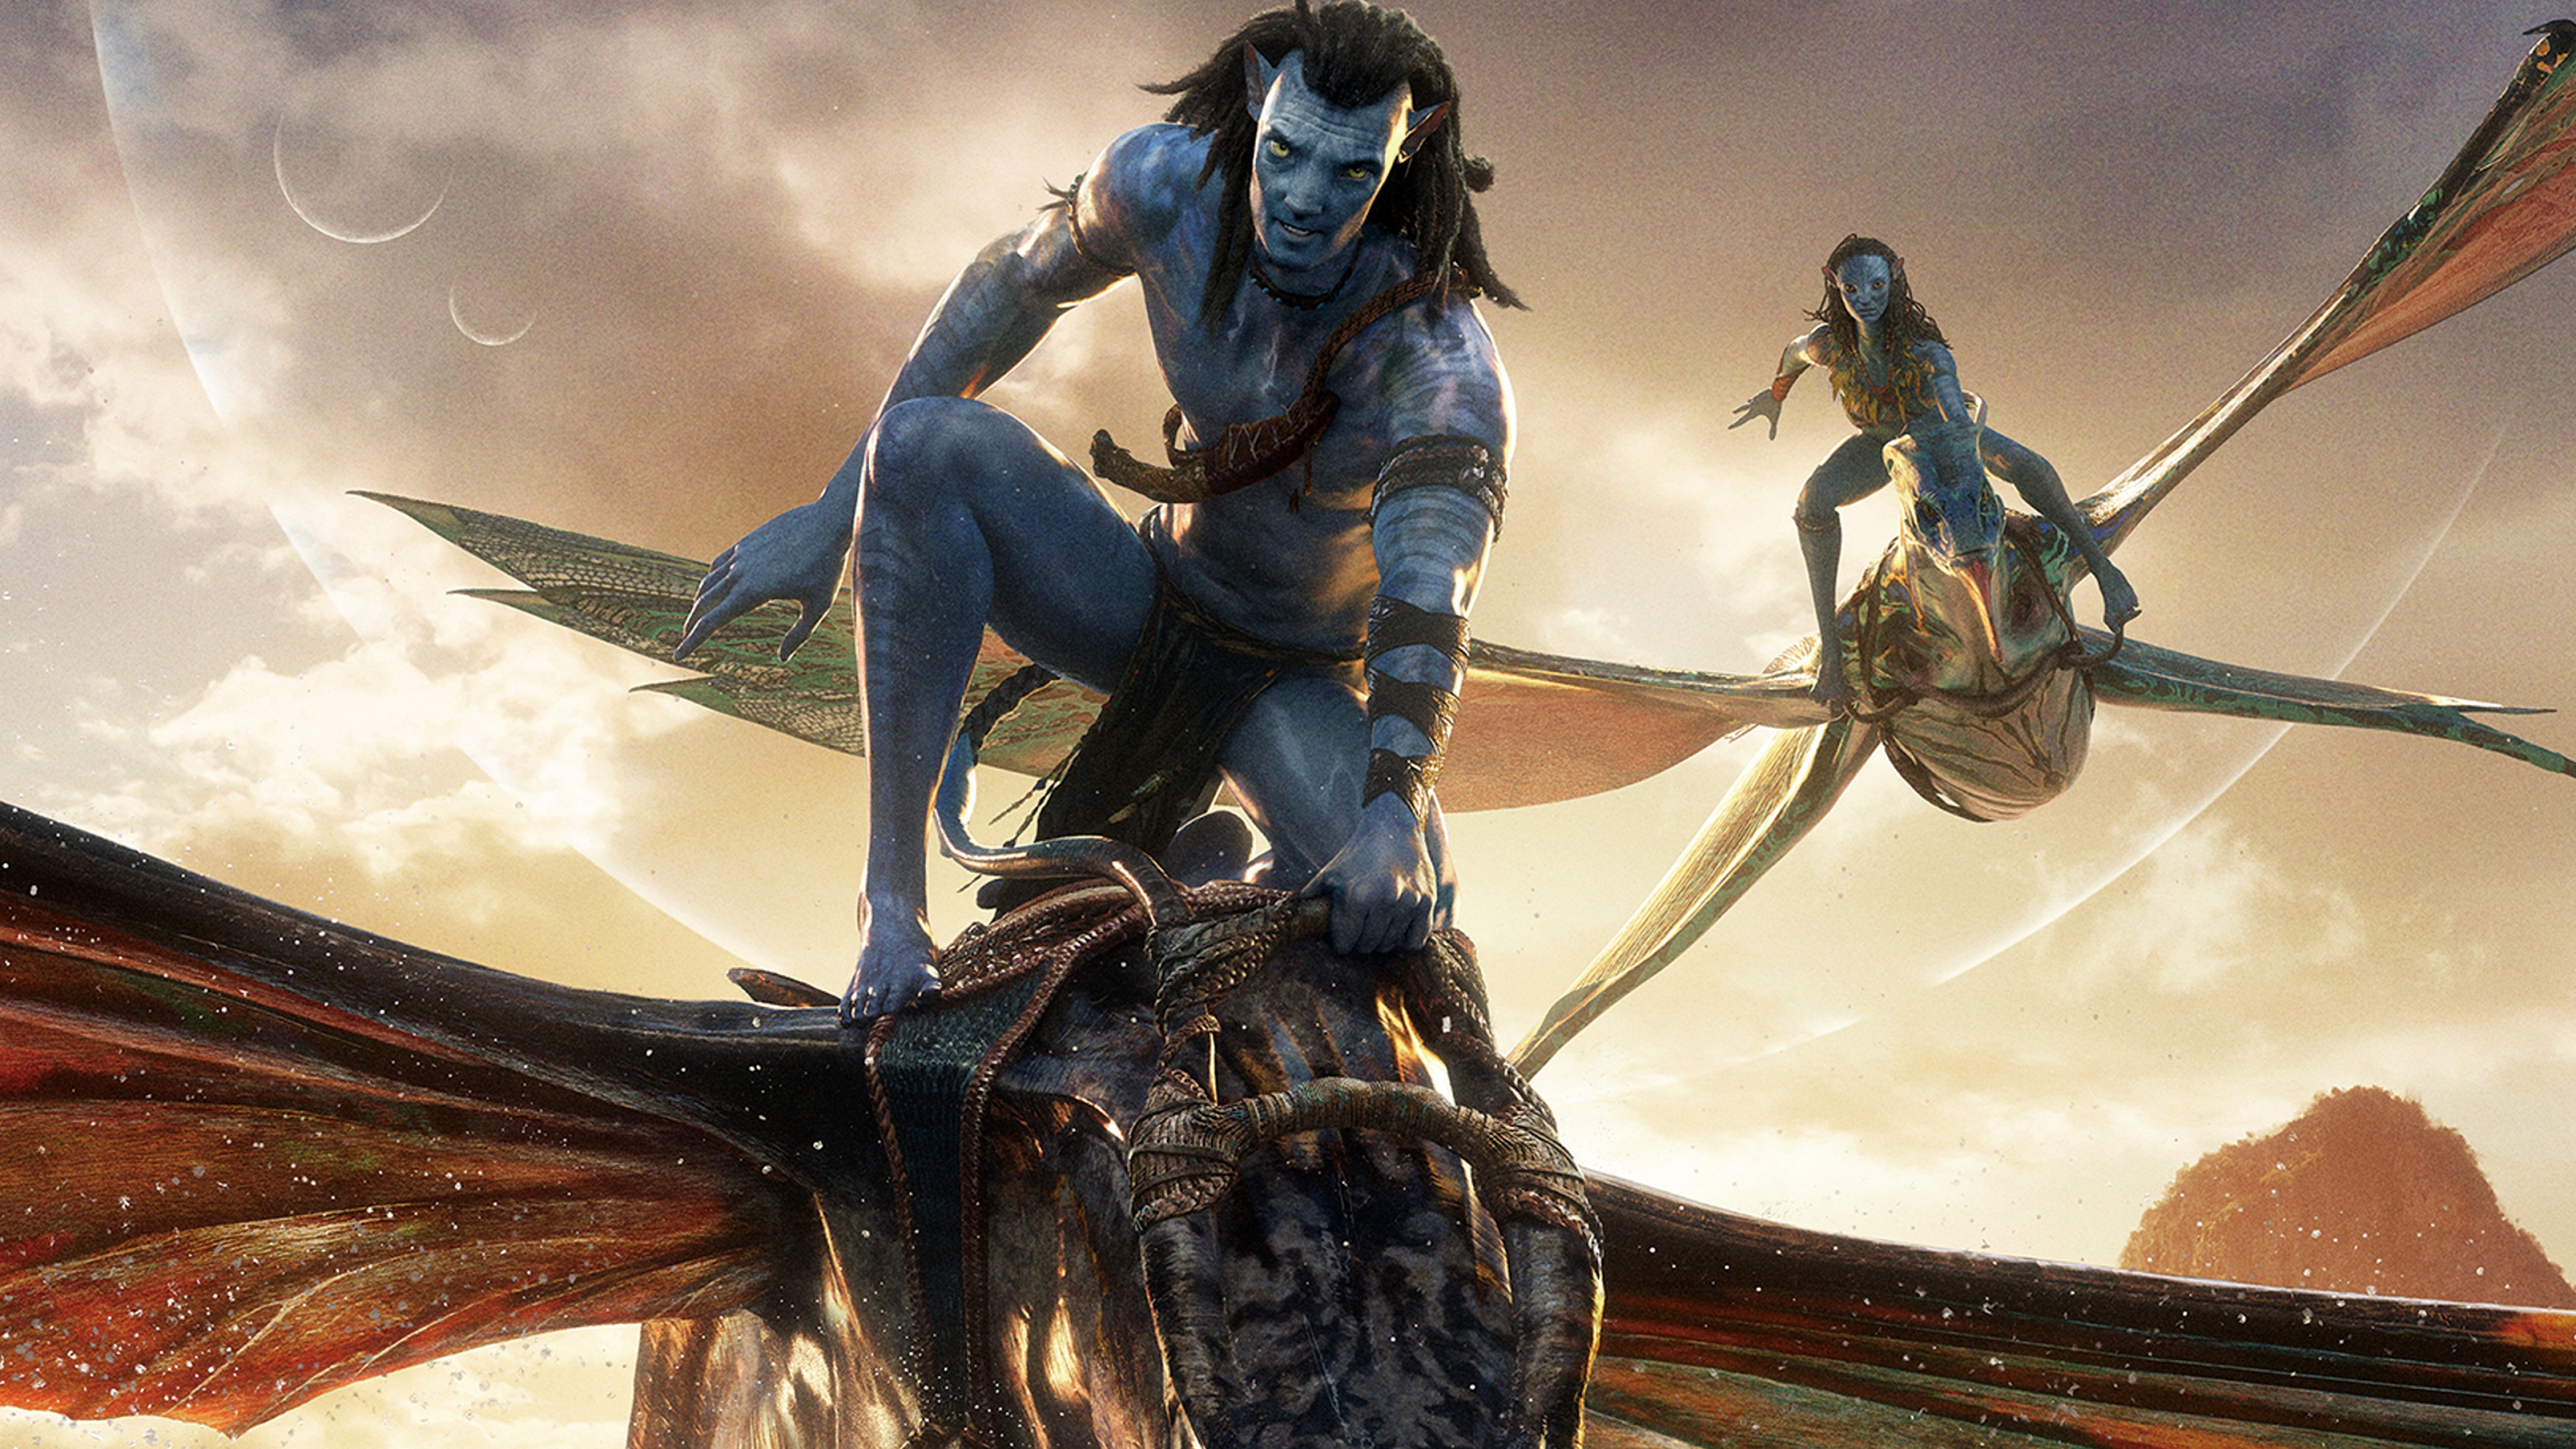 Avatar 2 The Way of Water  Kỳ quan kỹ xảo nghìn năm của điện ảnh thế giới   VFXAnimation